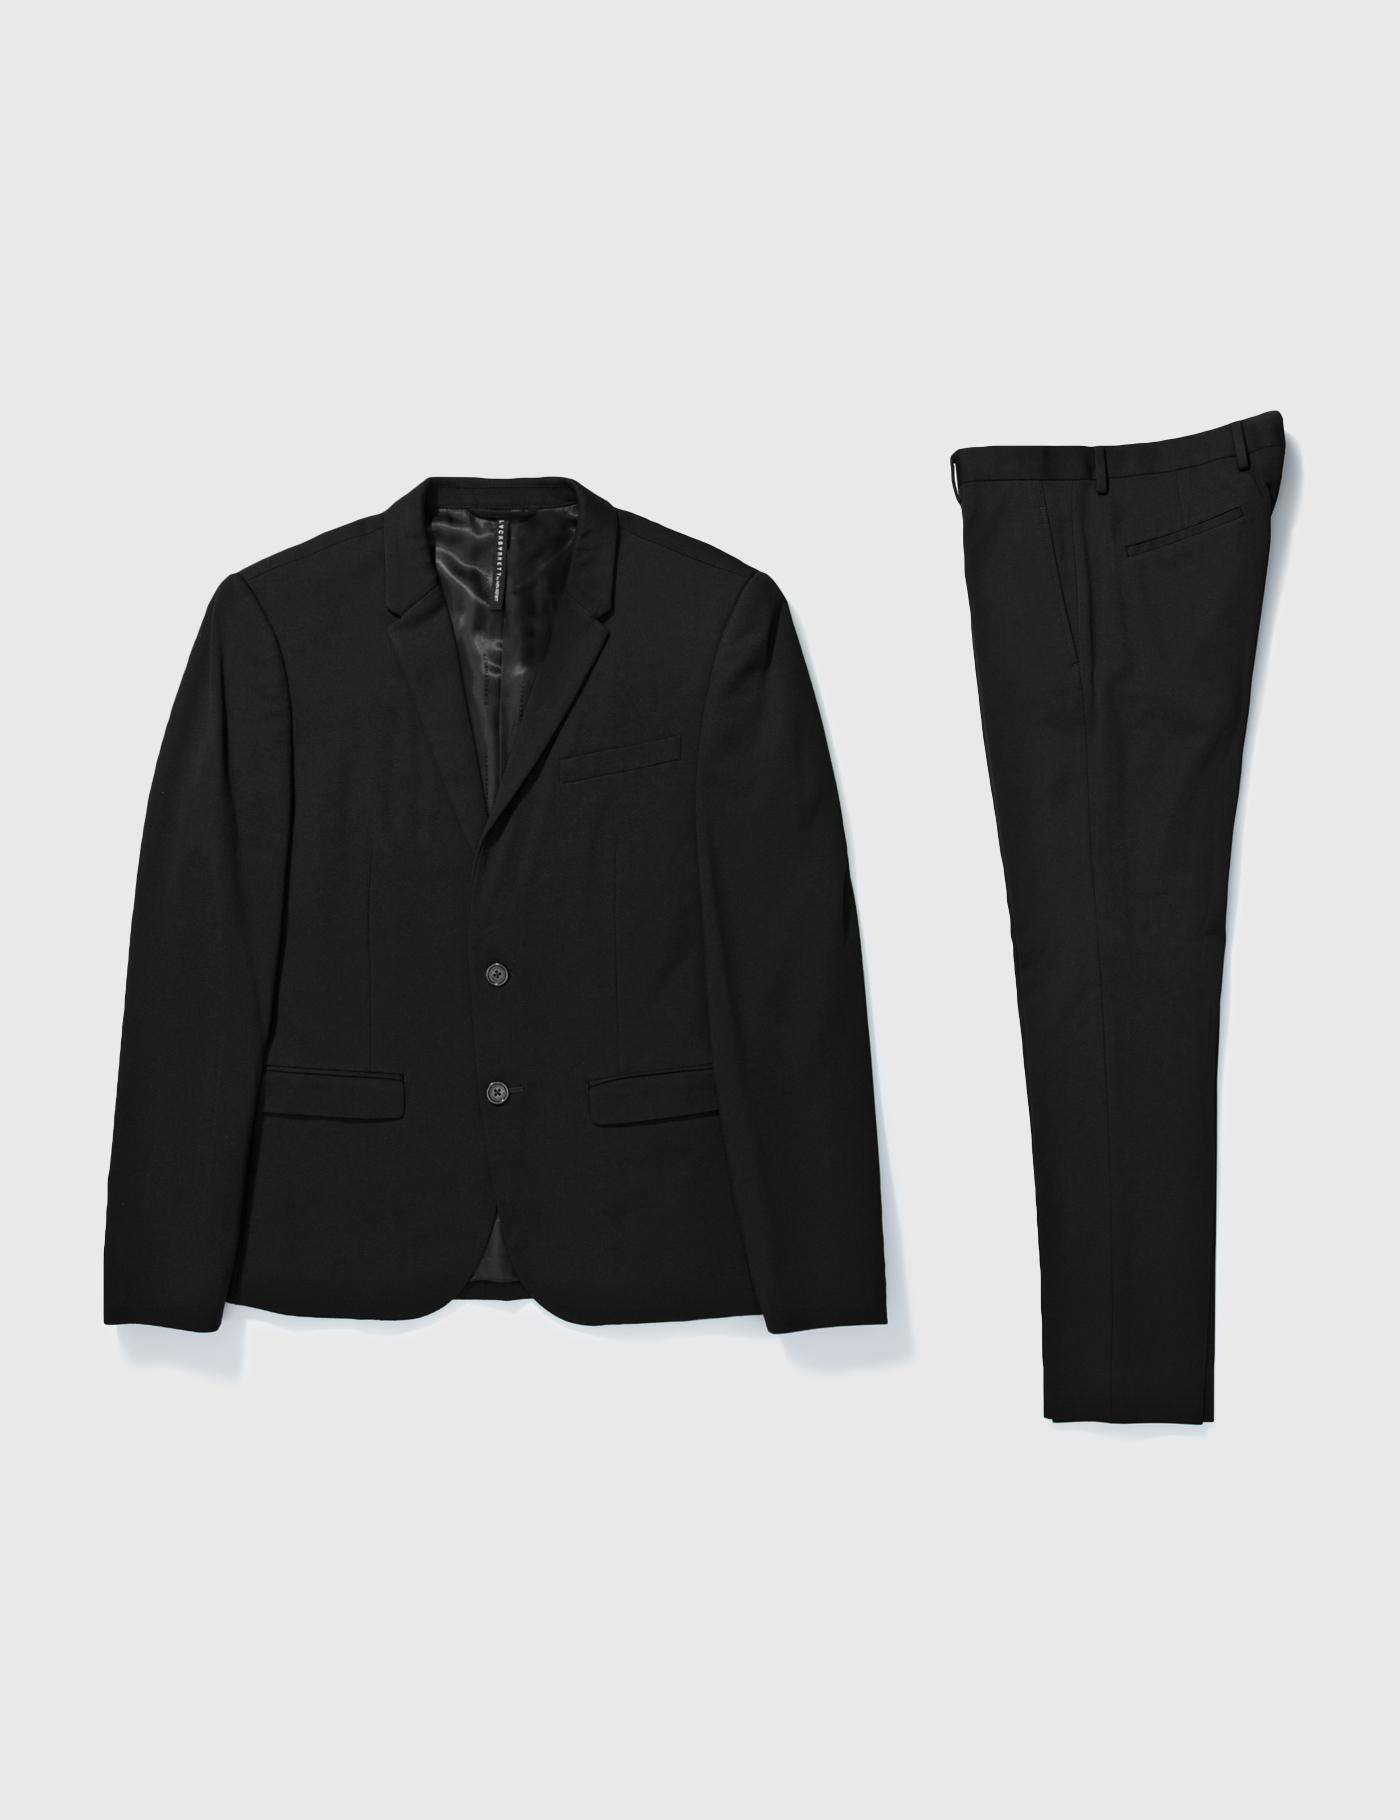 Black Barrett By Neil Barrett Two-piece Suit by BLACKBARRETT